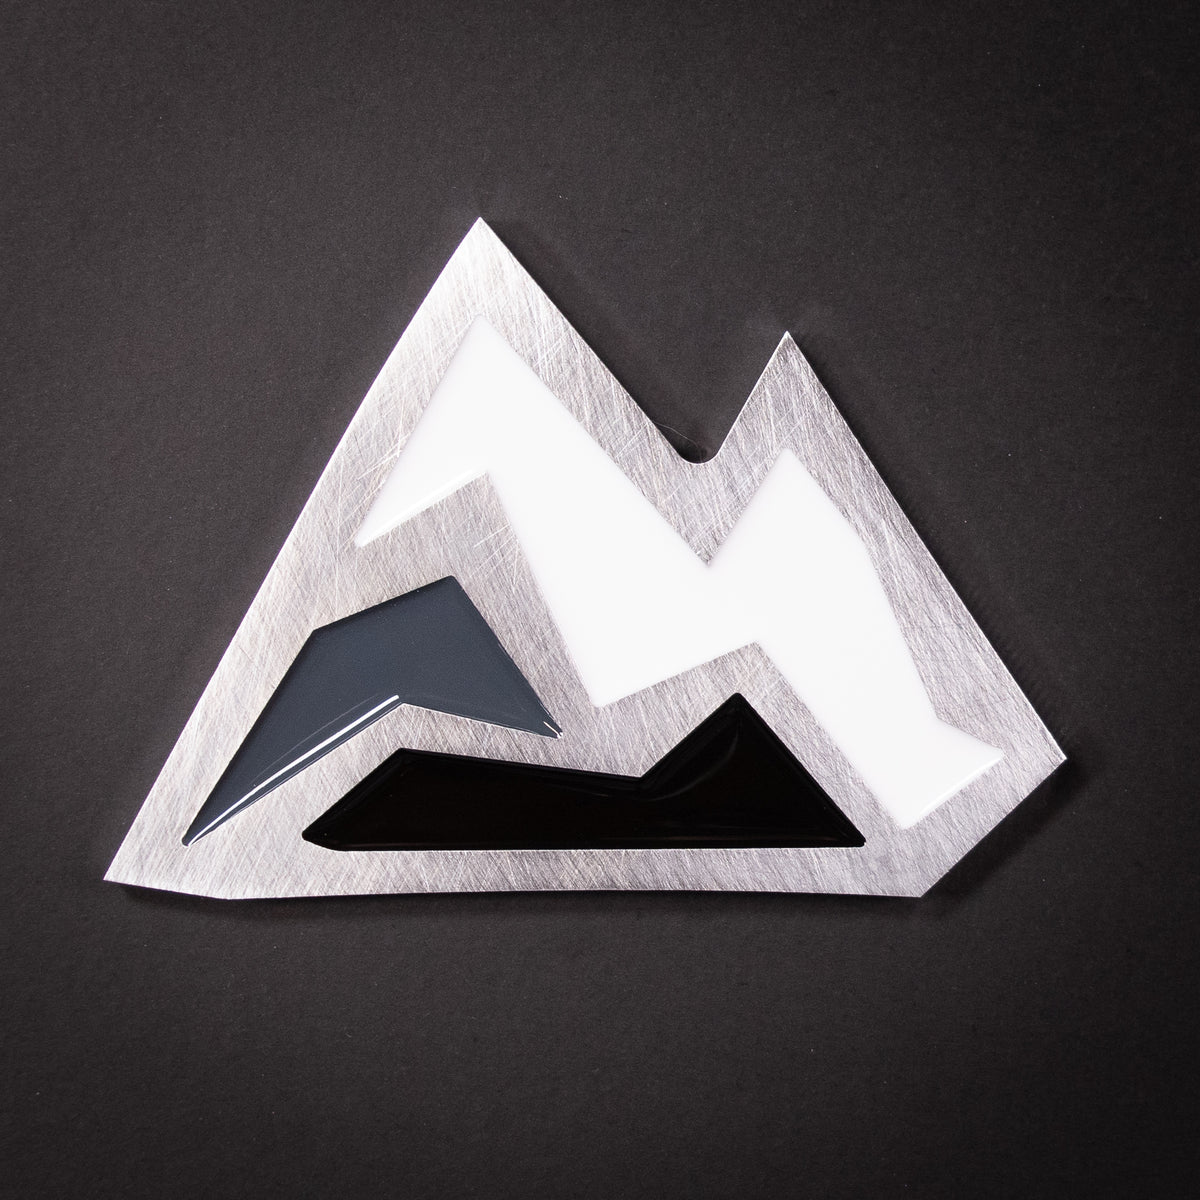 Alien Snowboard Stomp Pad – Modish Metal Art